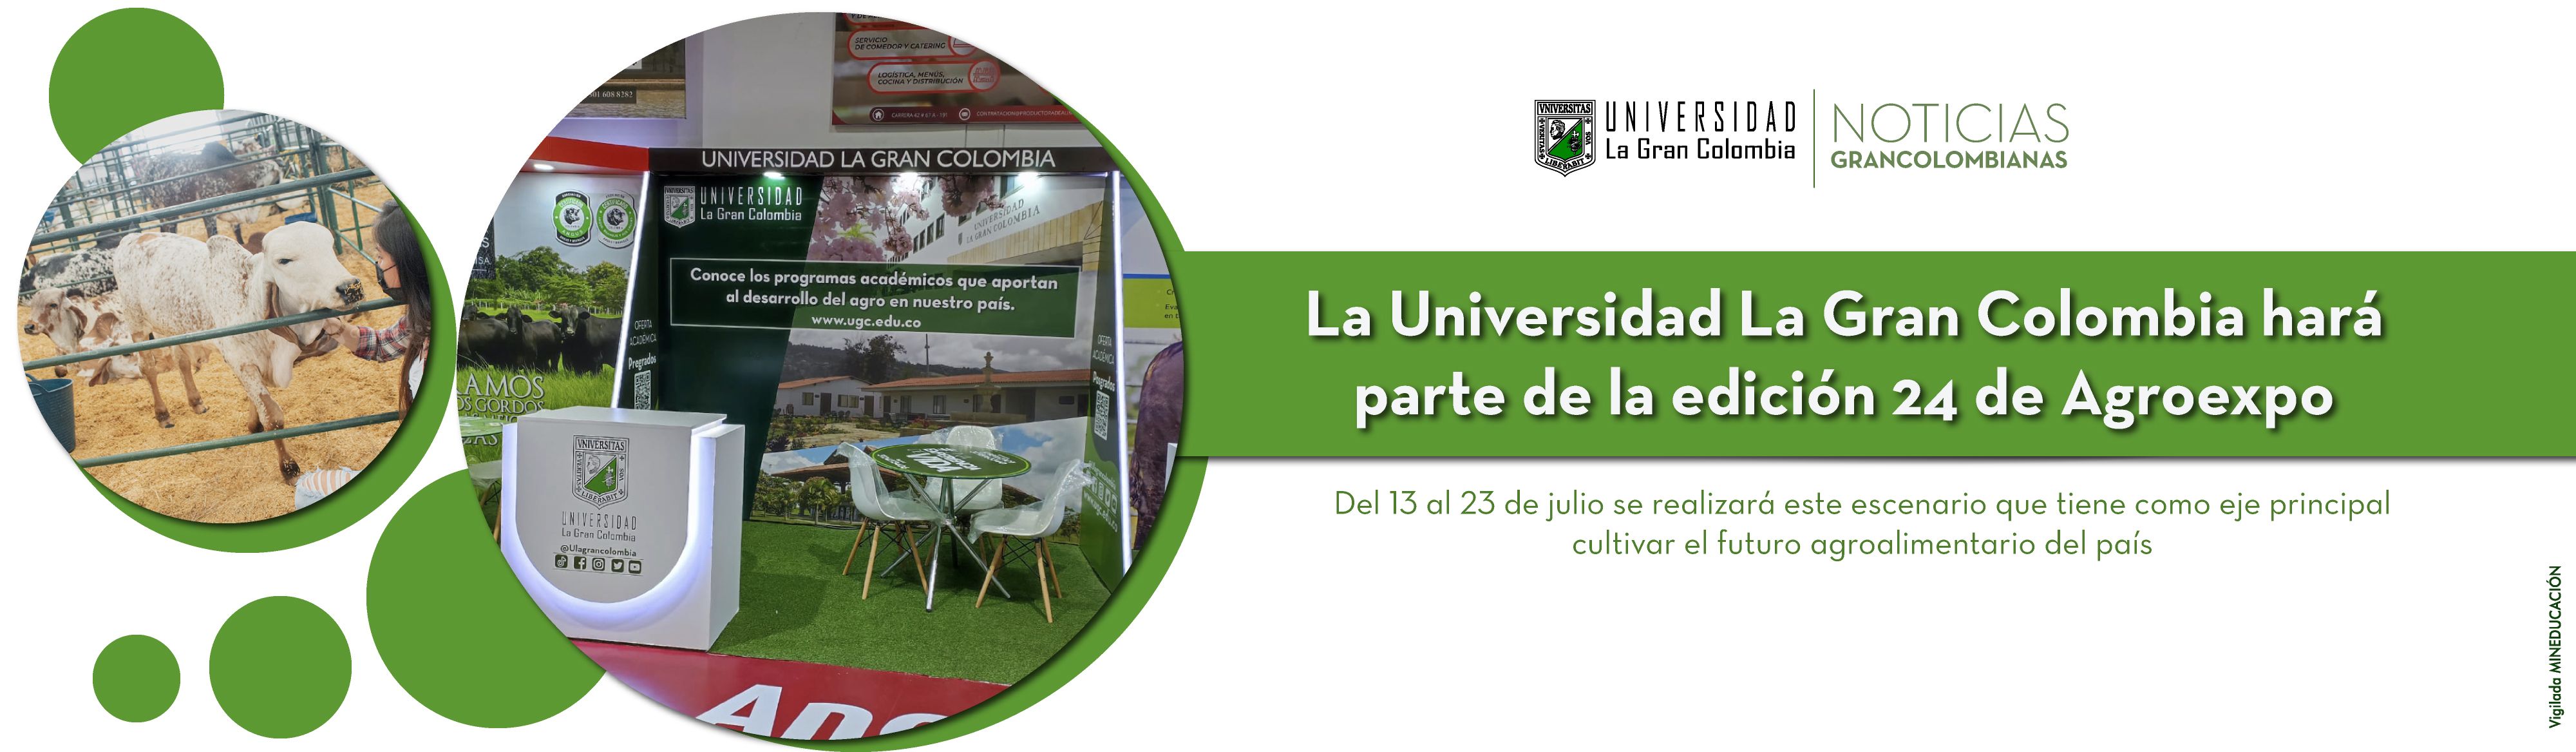 La Universidad La Gran Colombia hará parte de la edición 24 de Agroexpo